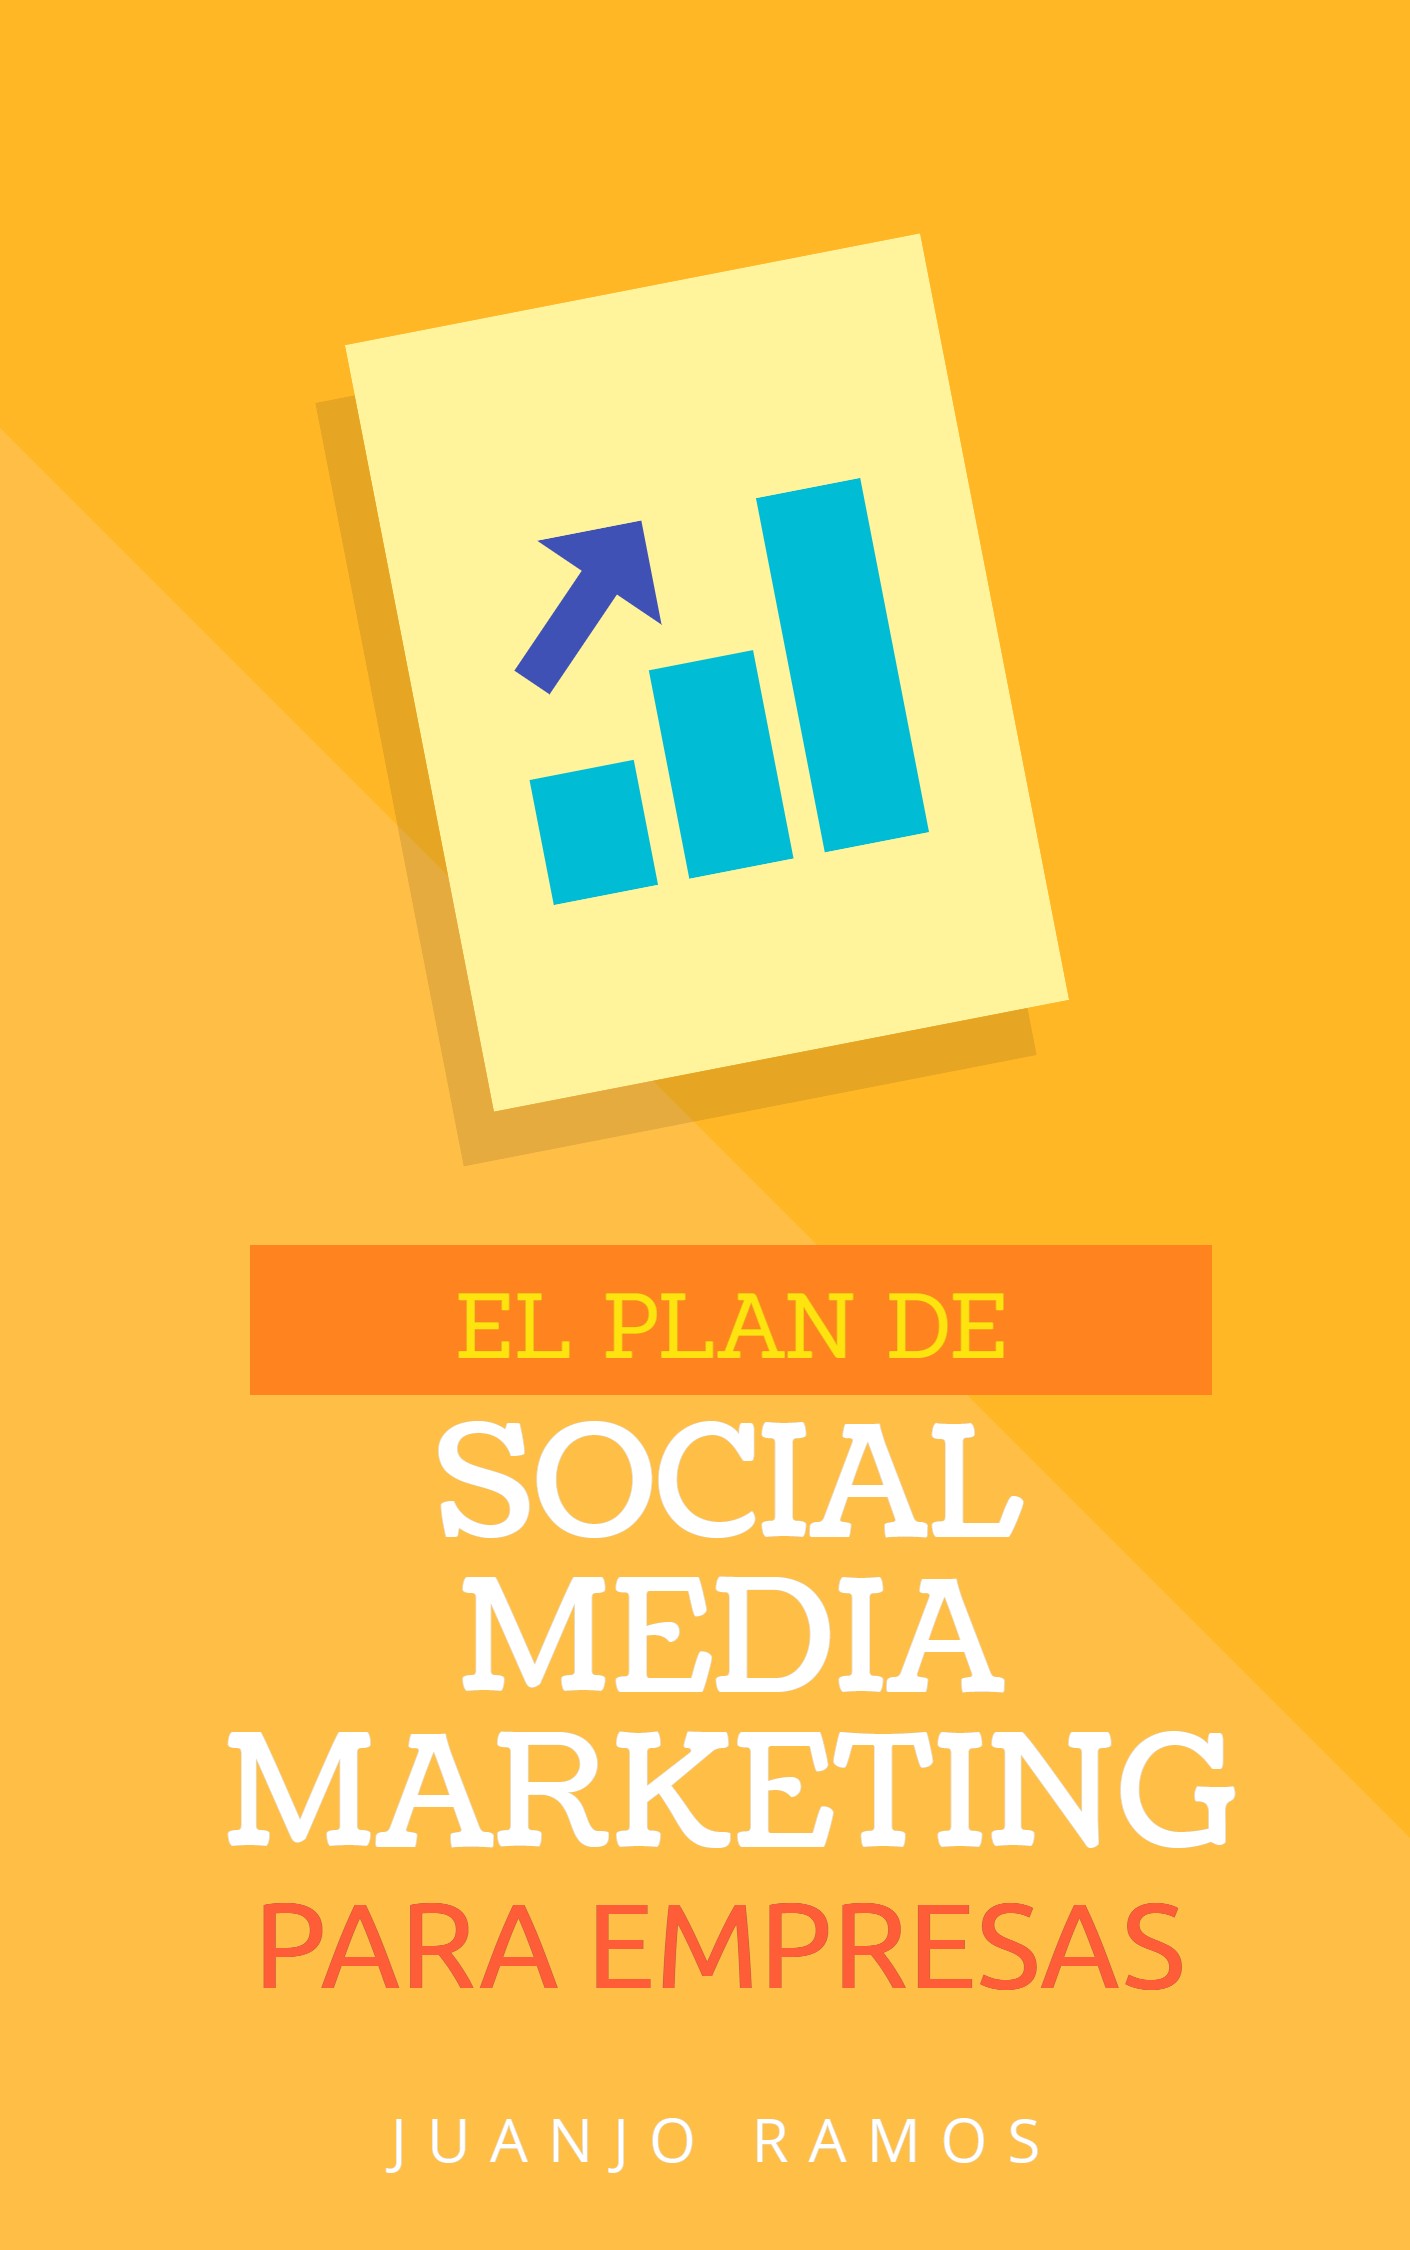 Planes de marketing en redes sociales para empresas - Consultores SEO - Aprendermarketing.es